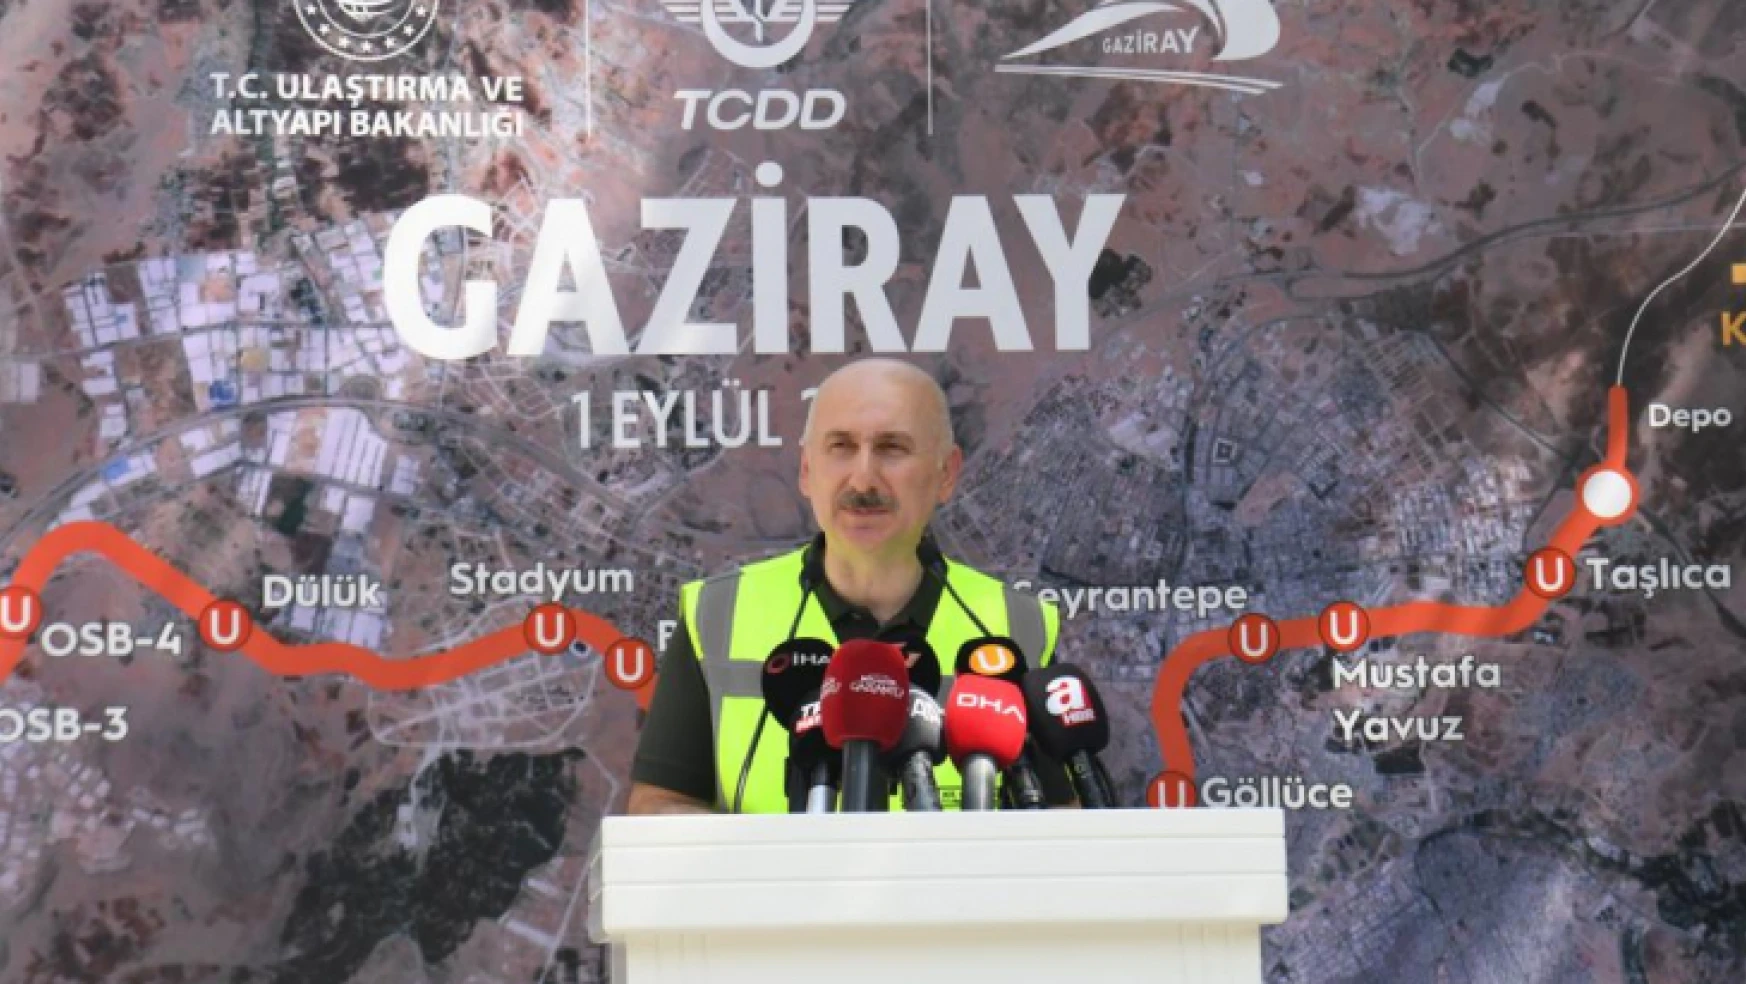 Ulaştırma ve Altyapı Bakanı Adil Karaismailoğlu, Gaziantep'te Gaziray'ın test sürüşüne katıldı